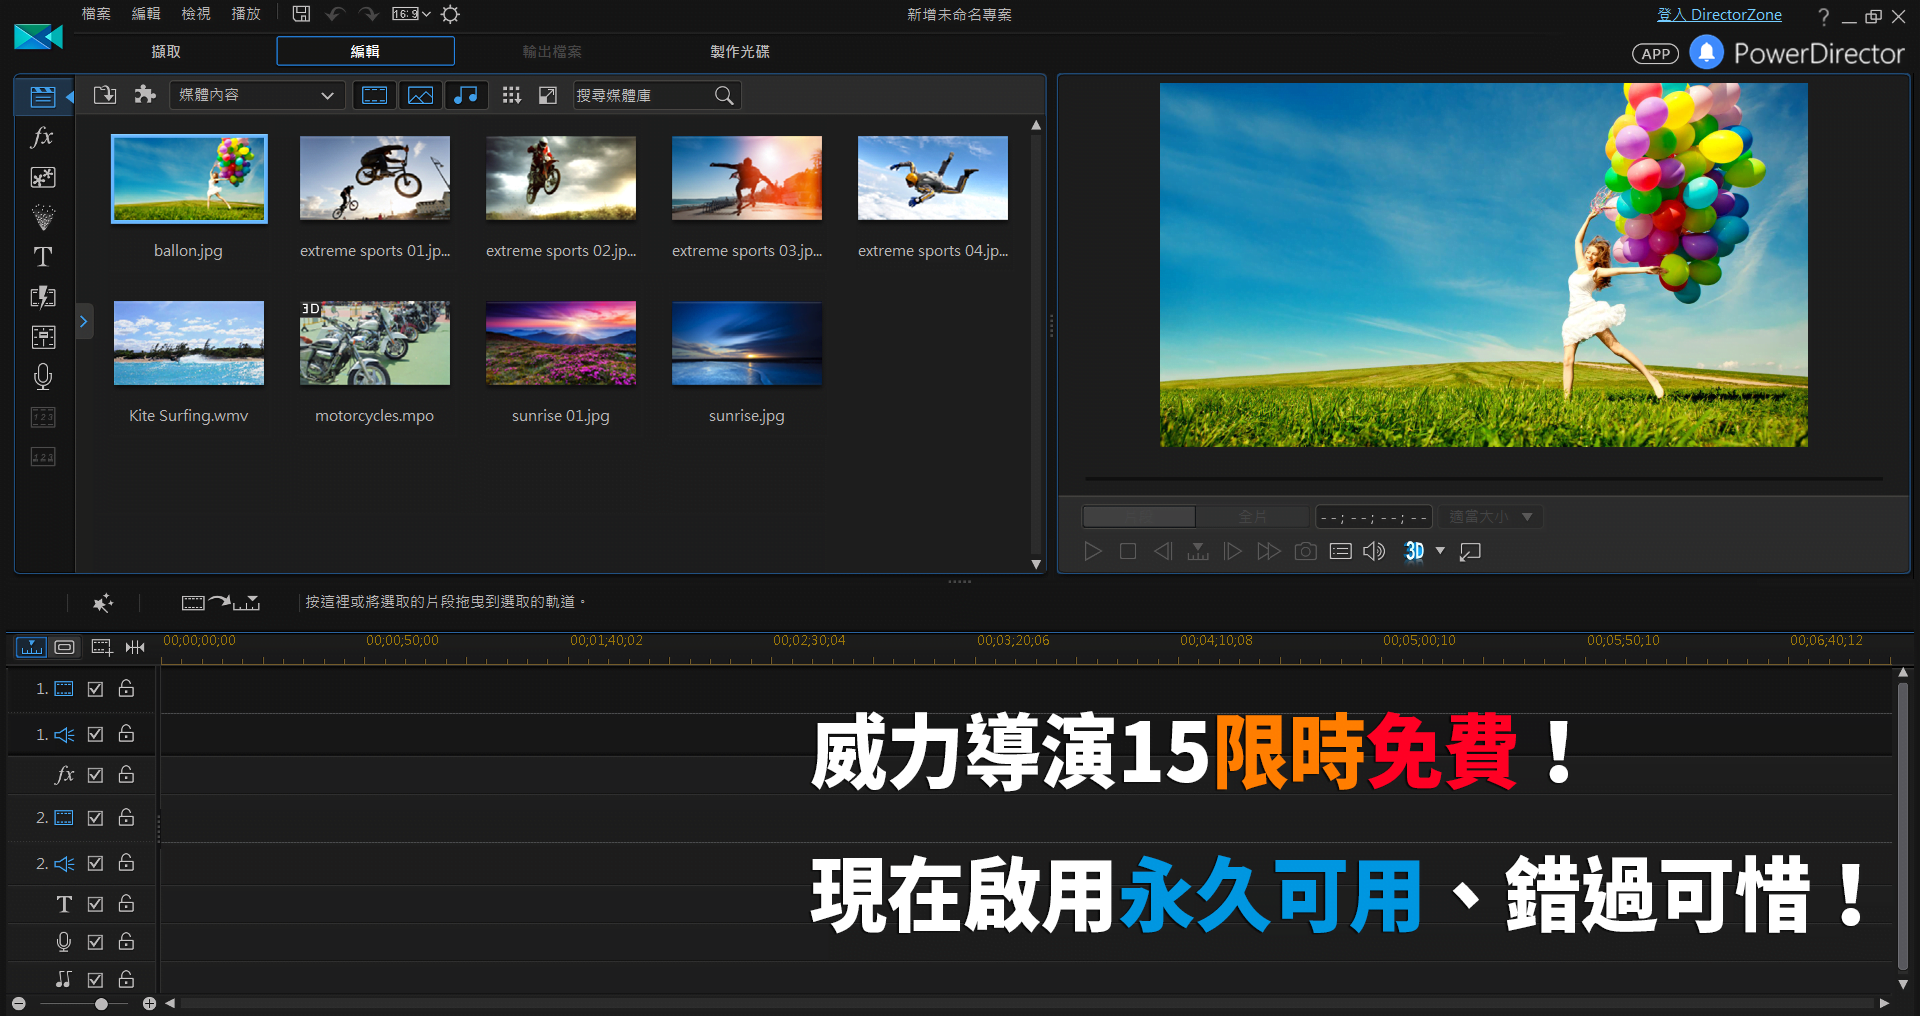 威力導演 15 LE 繁體中文版「限時免費」下載，啟用後永久可用！